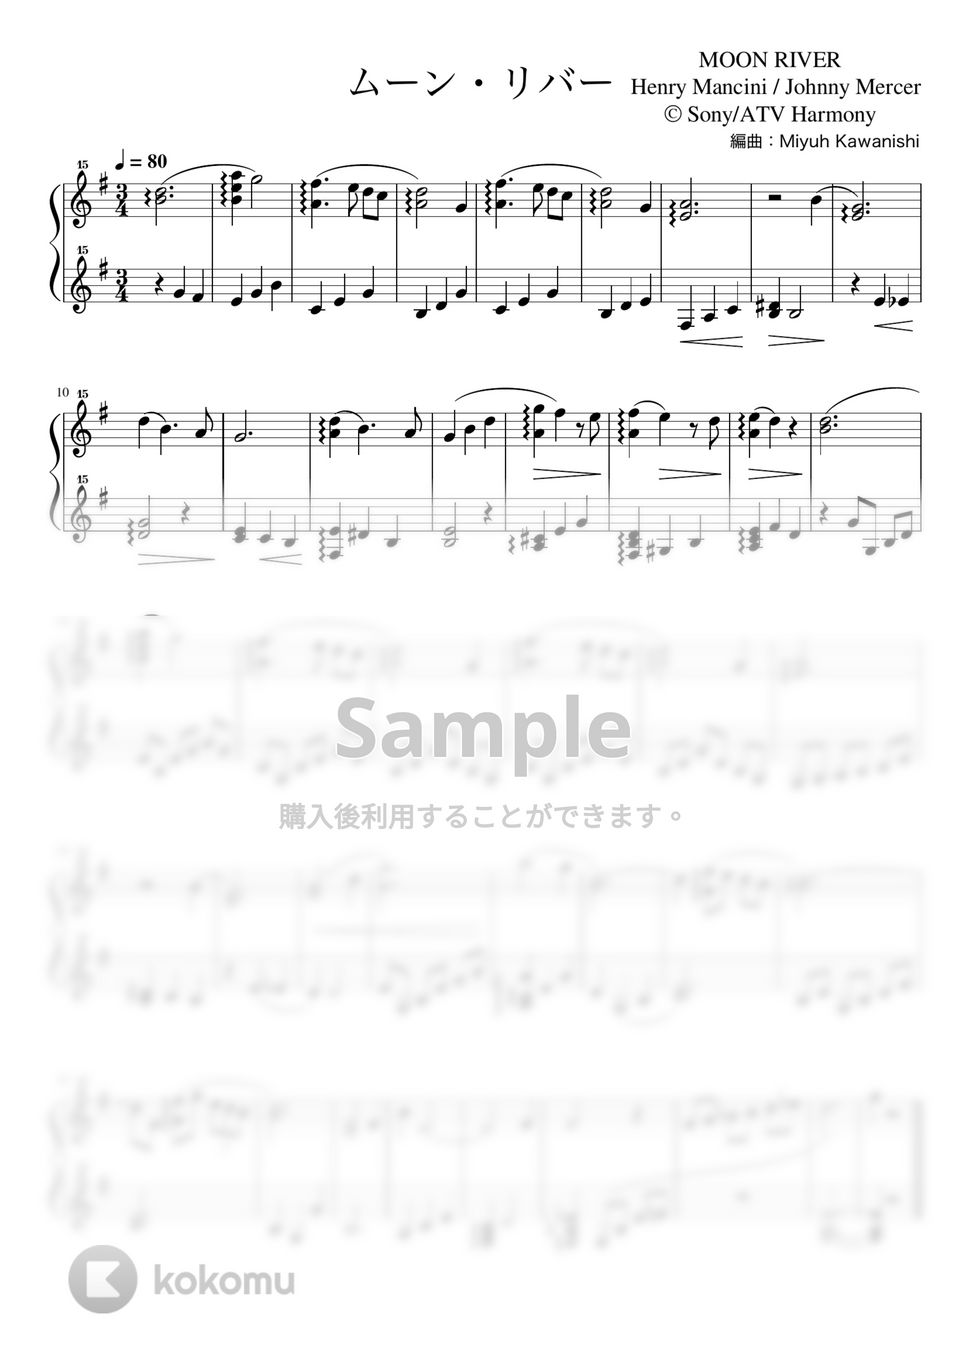 MANCINI HENRY NICOLA - ムーン・リバー (トイピアノ / ジャズ / 32鍵盤) by 川西三裕